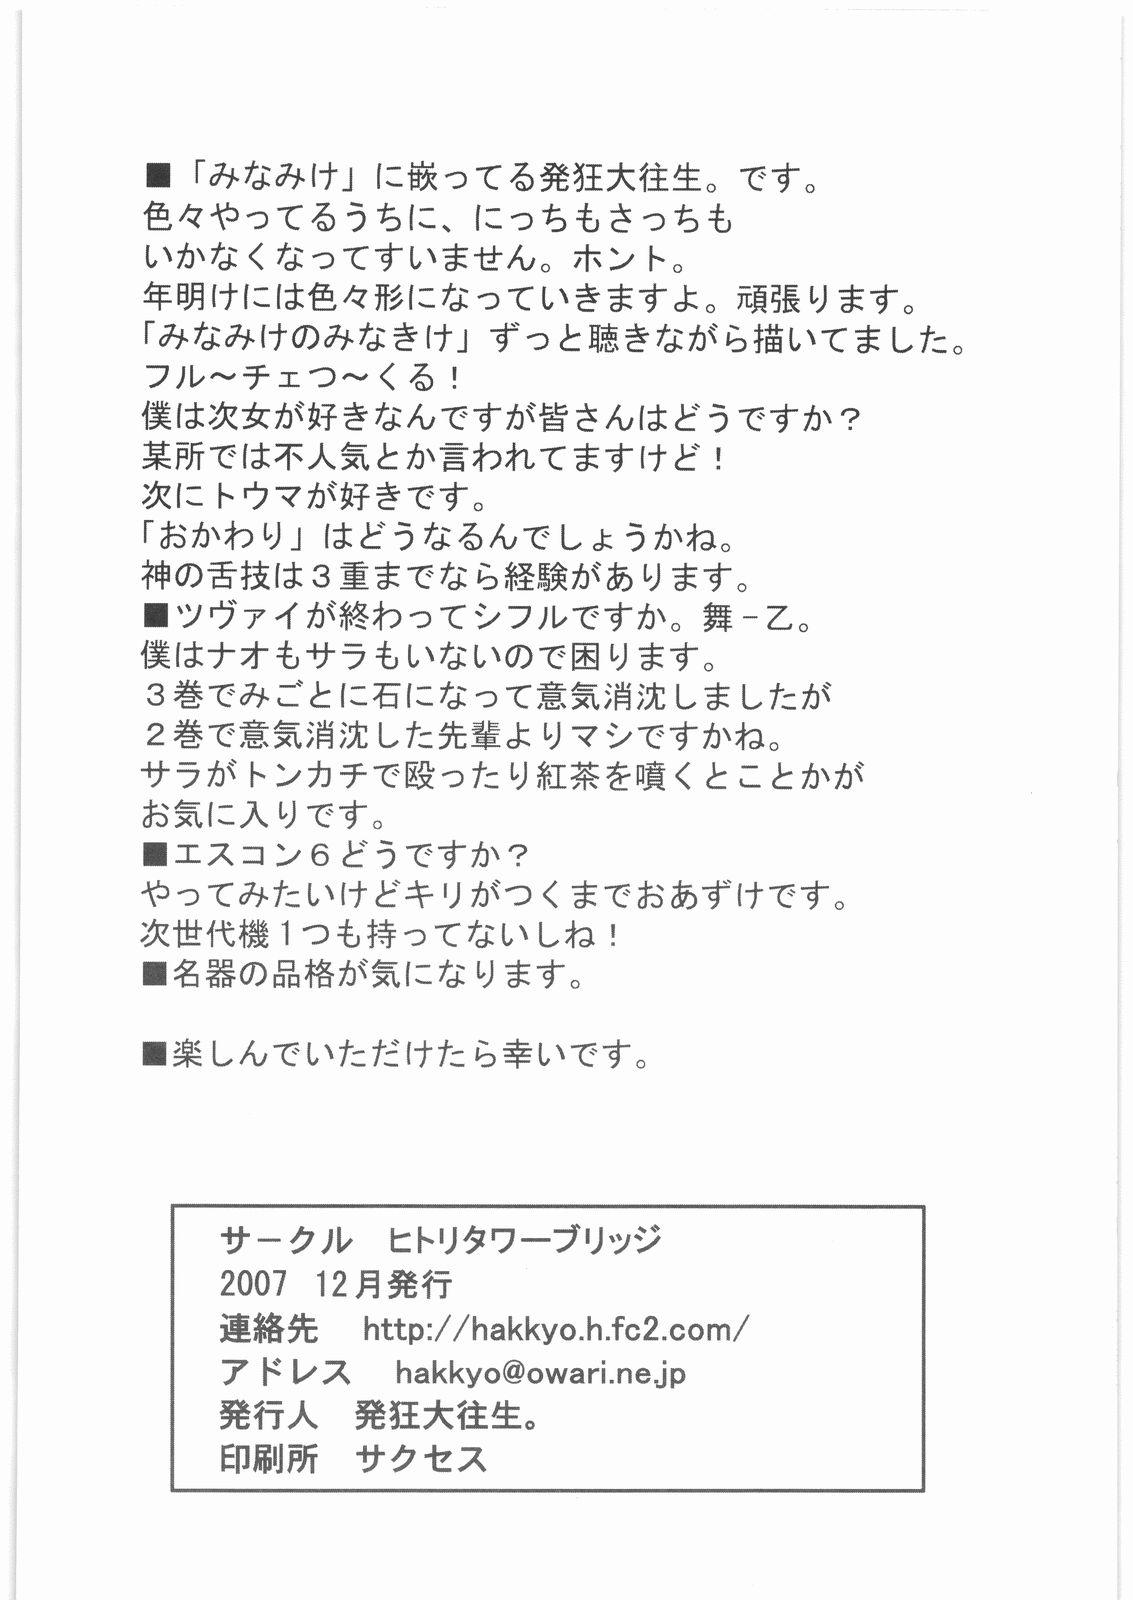 Copy Shi Daioujou 3. 2